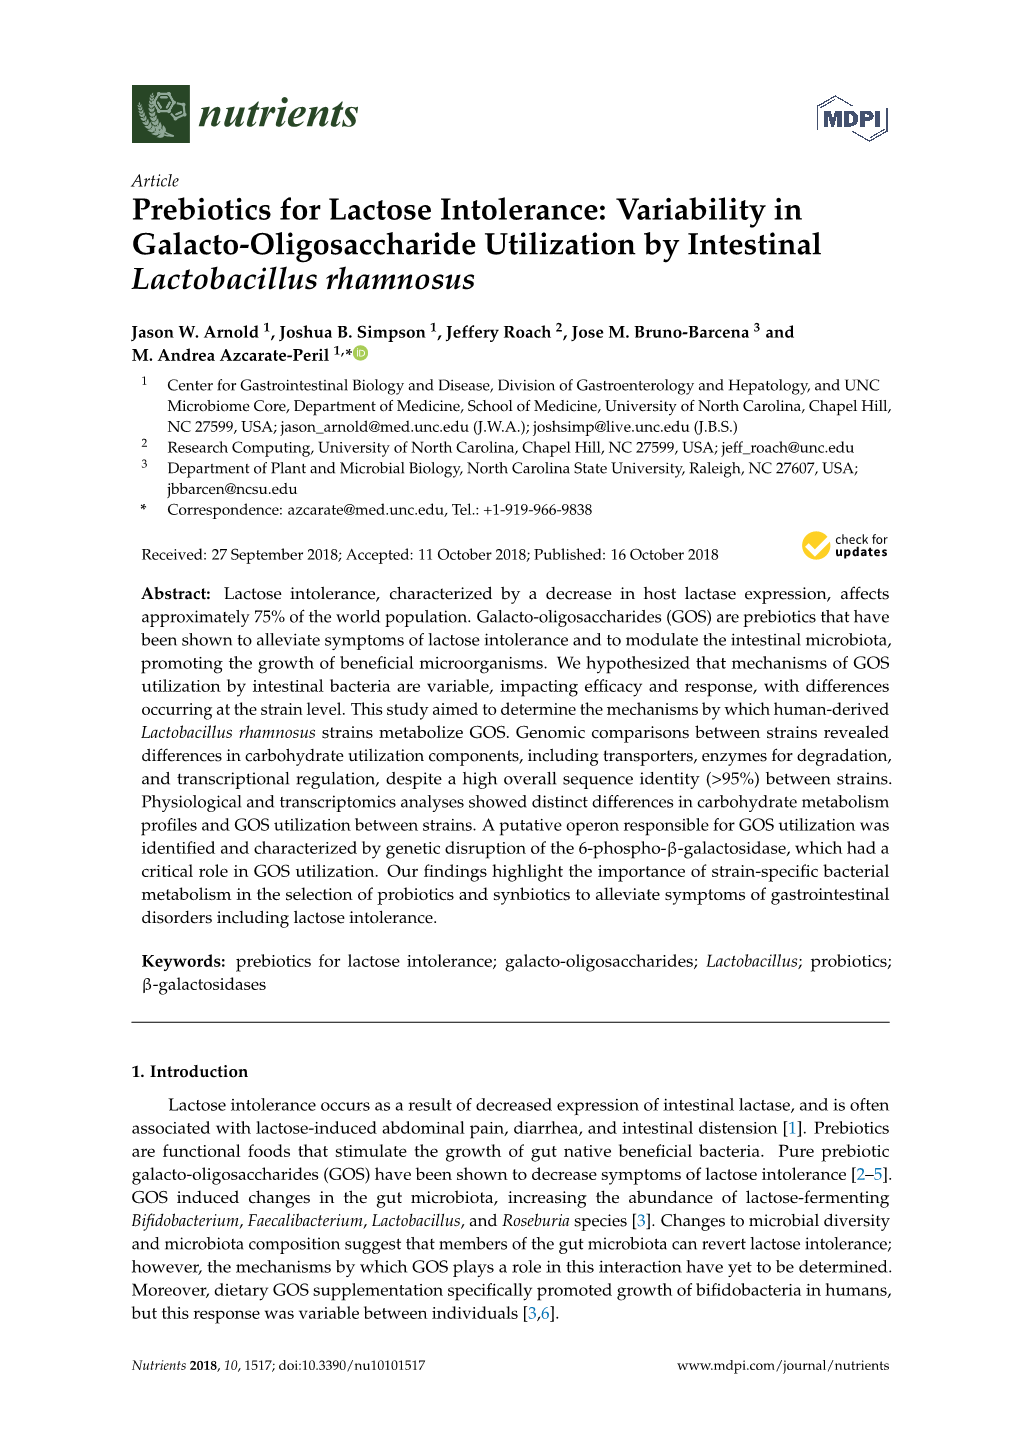 Prebiotics for Lactose Intolerance: Variability in Galacto-Oligosaccharide Utilization by Intestinal Lactobacillus Rhamnosus